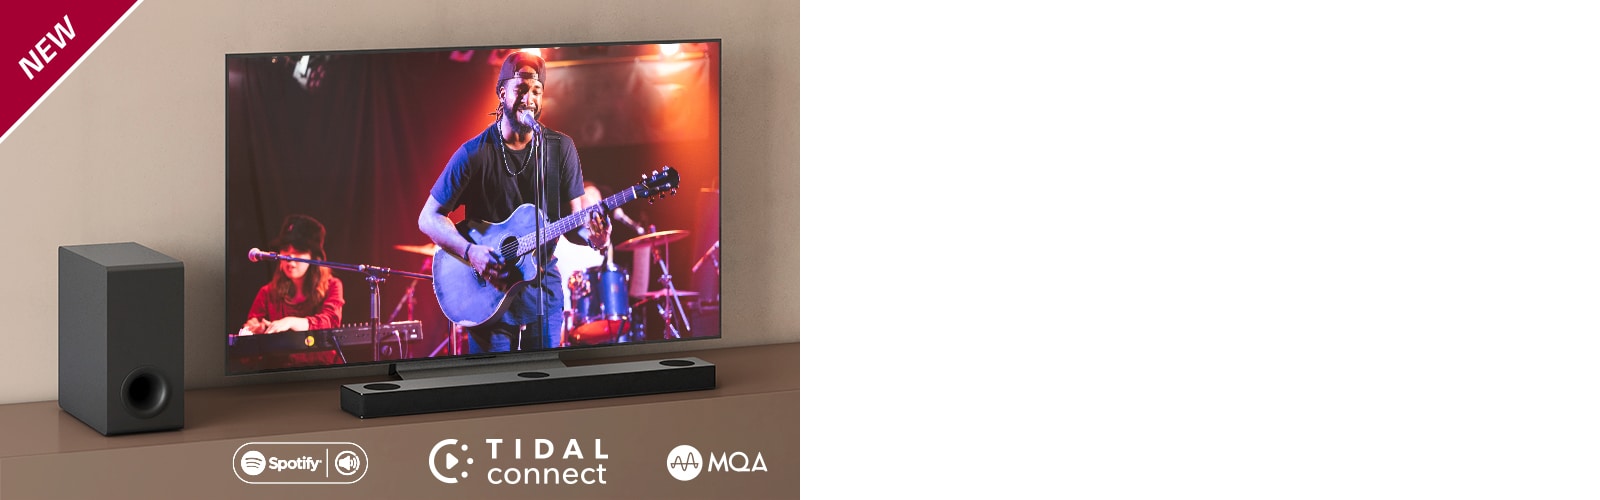 Televizor LG je umístěn na hnědé poličce a soundbar LG S75Q před ním. Subwoofer je položen na podlaze vlevo od televizoru. Na obrazovce televizoru vidíme hudební koncert. V levém horním rohu je umístěn nápis NOVINKA.